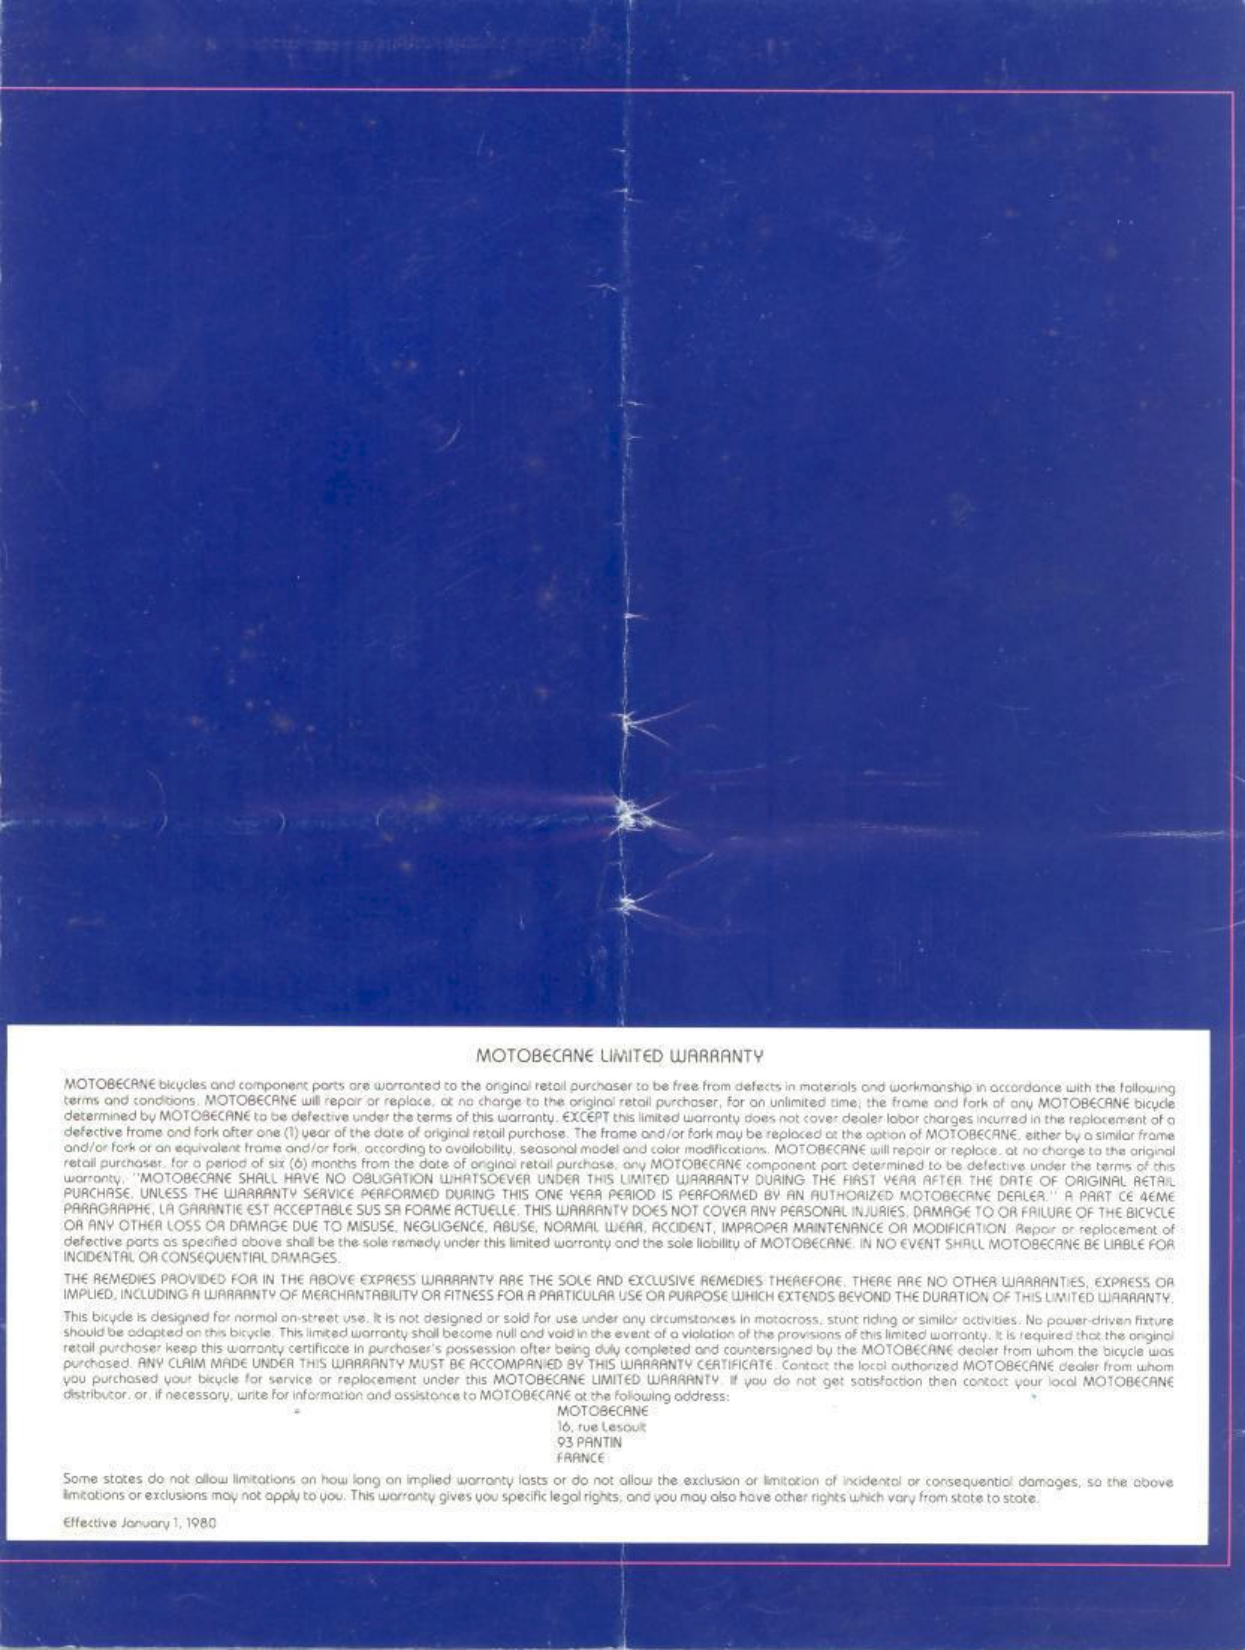 Motobecane catalog (1980)